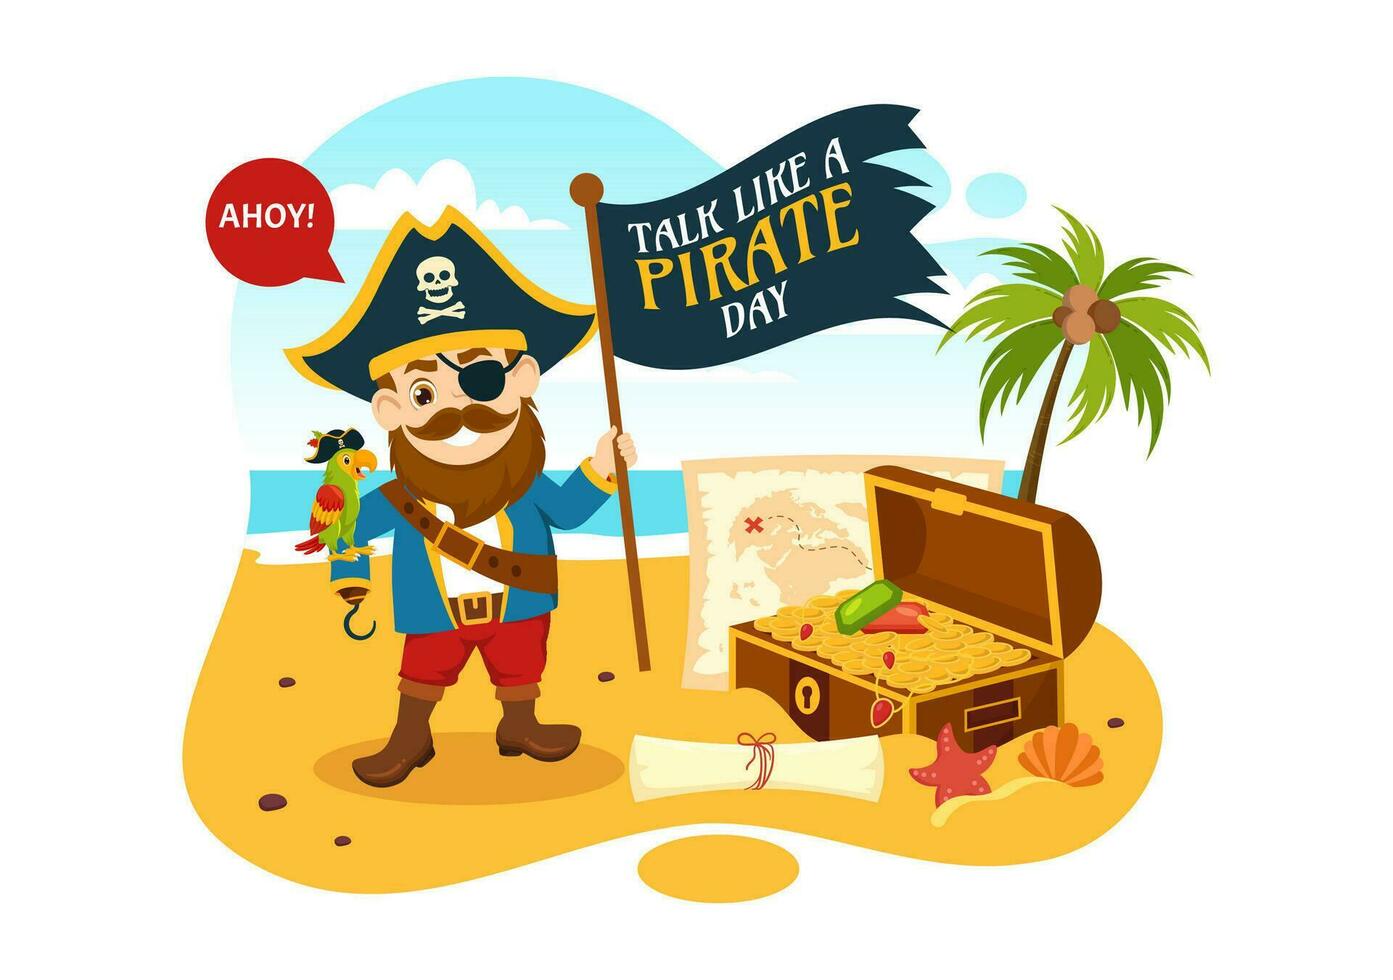 internazionale parlare piace un' pirata giorno vettore illustrazione con carino pirati cartone animato personaggio nel mano disegnato per ragnatela bandiera o atterraggio pagina modelli